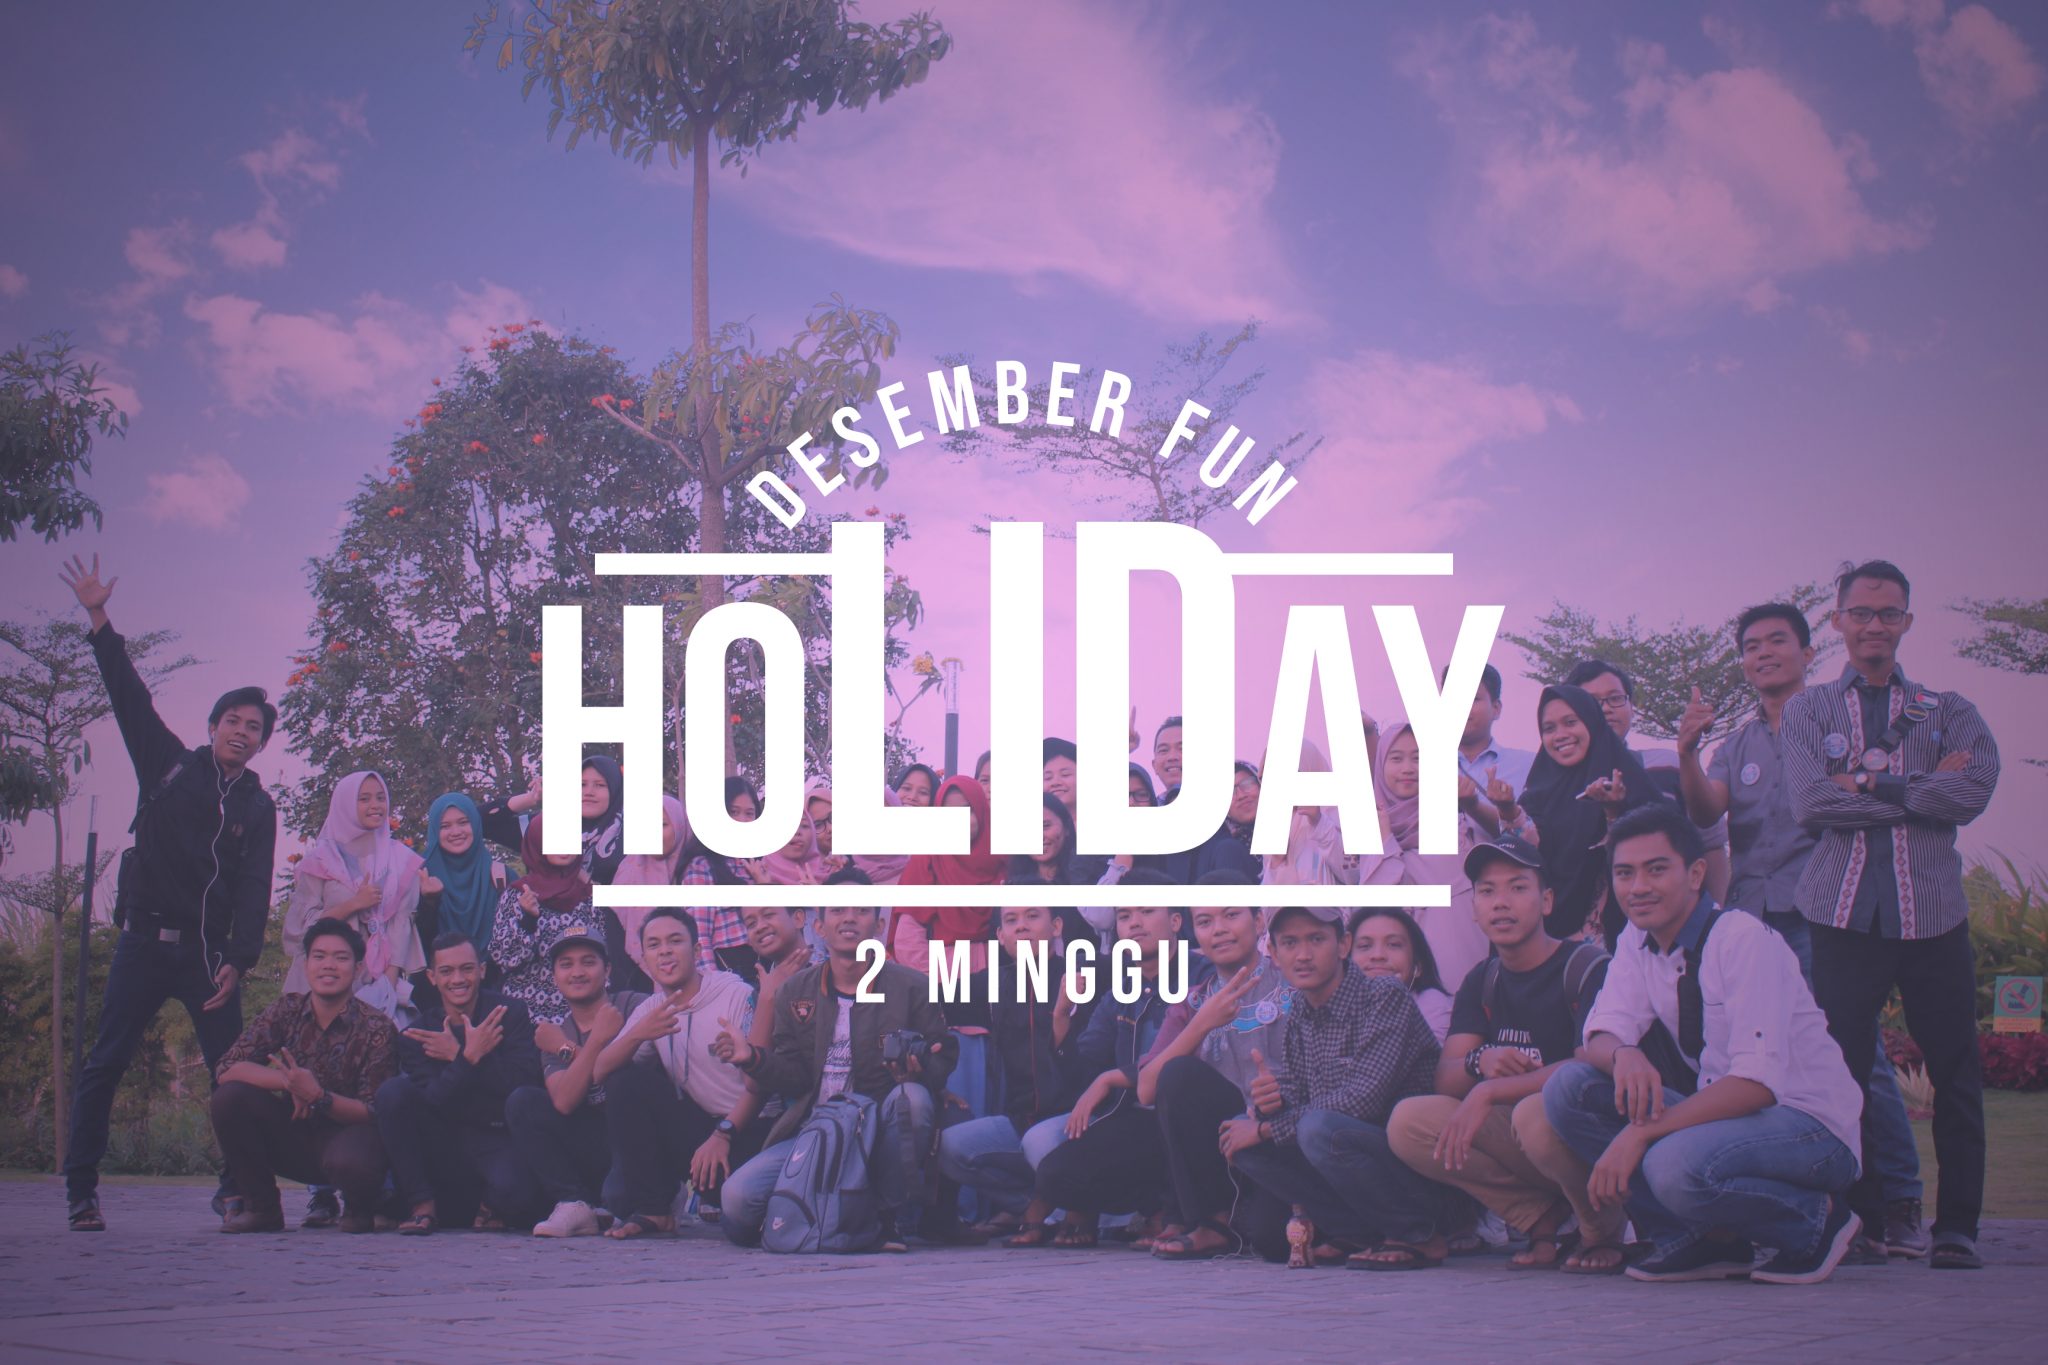 Desember Fun Holiday 2 Minggu